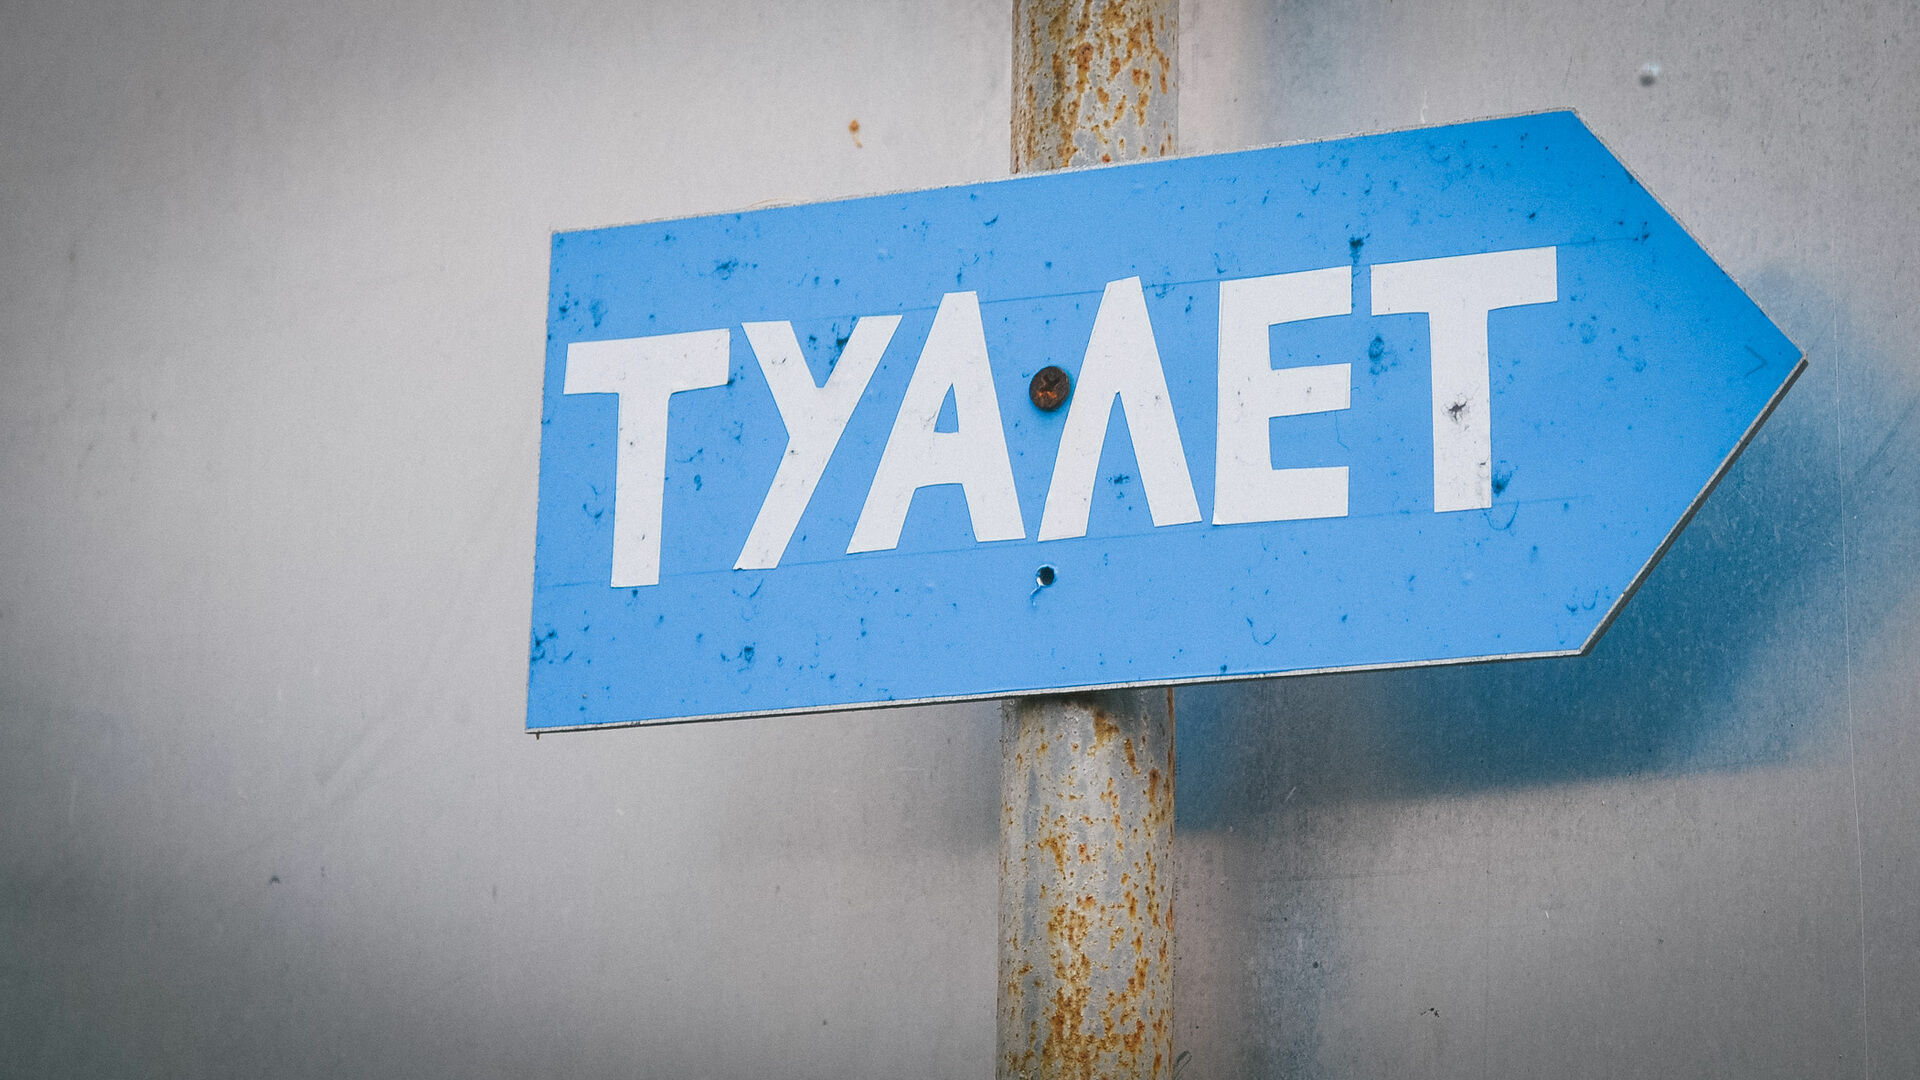 Автономные туалетные модули появятся на улицах Нижнего Новгорода